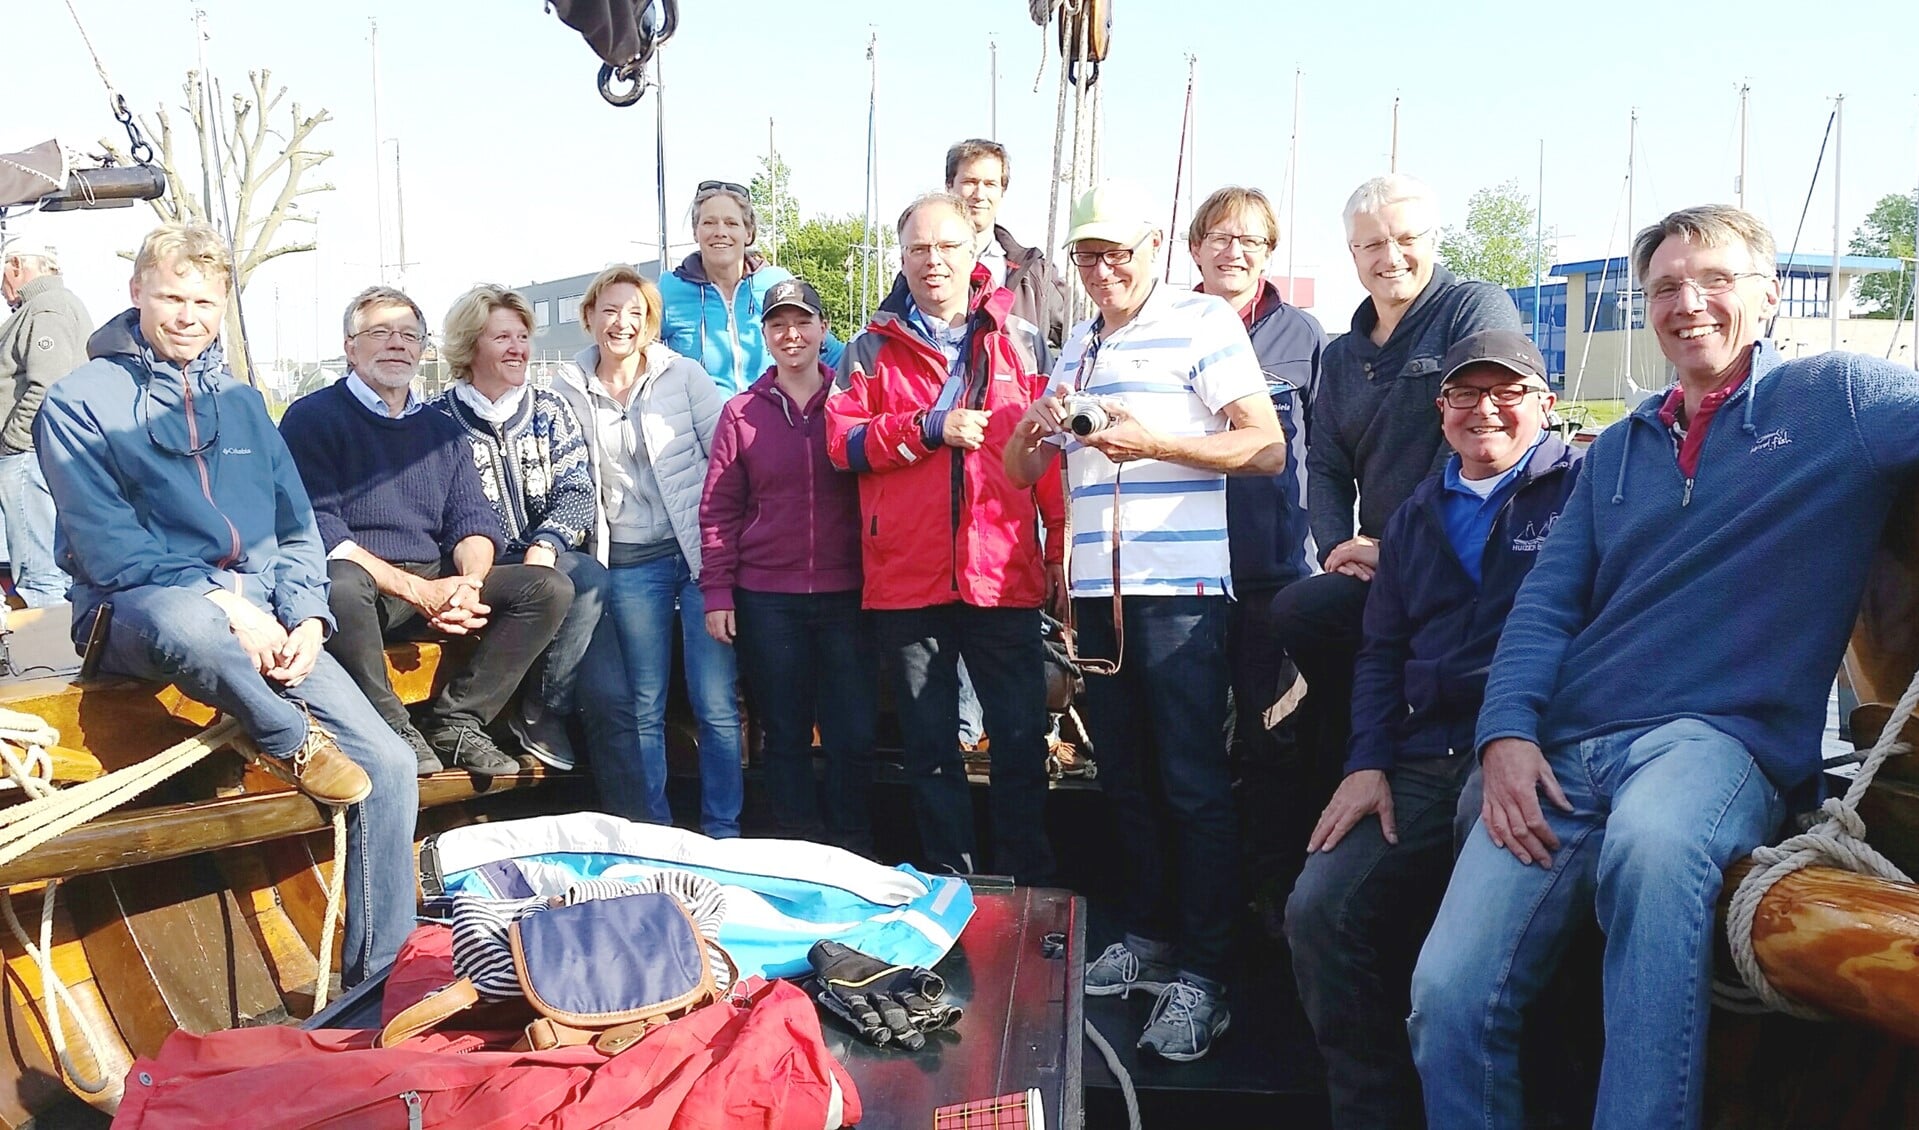 De samenwerking ontstond bij een zeiltocht met de schippers en het bestuur van Stichting Gooimeerzeilen op een Huizer botter.